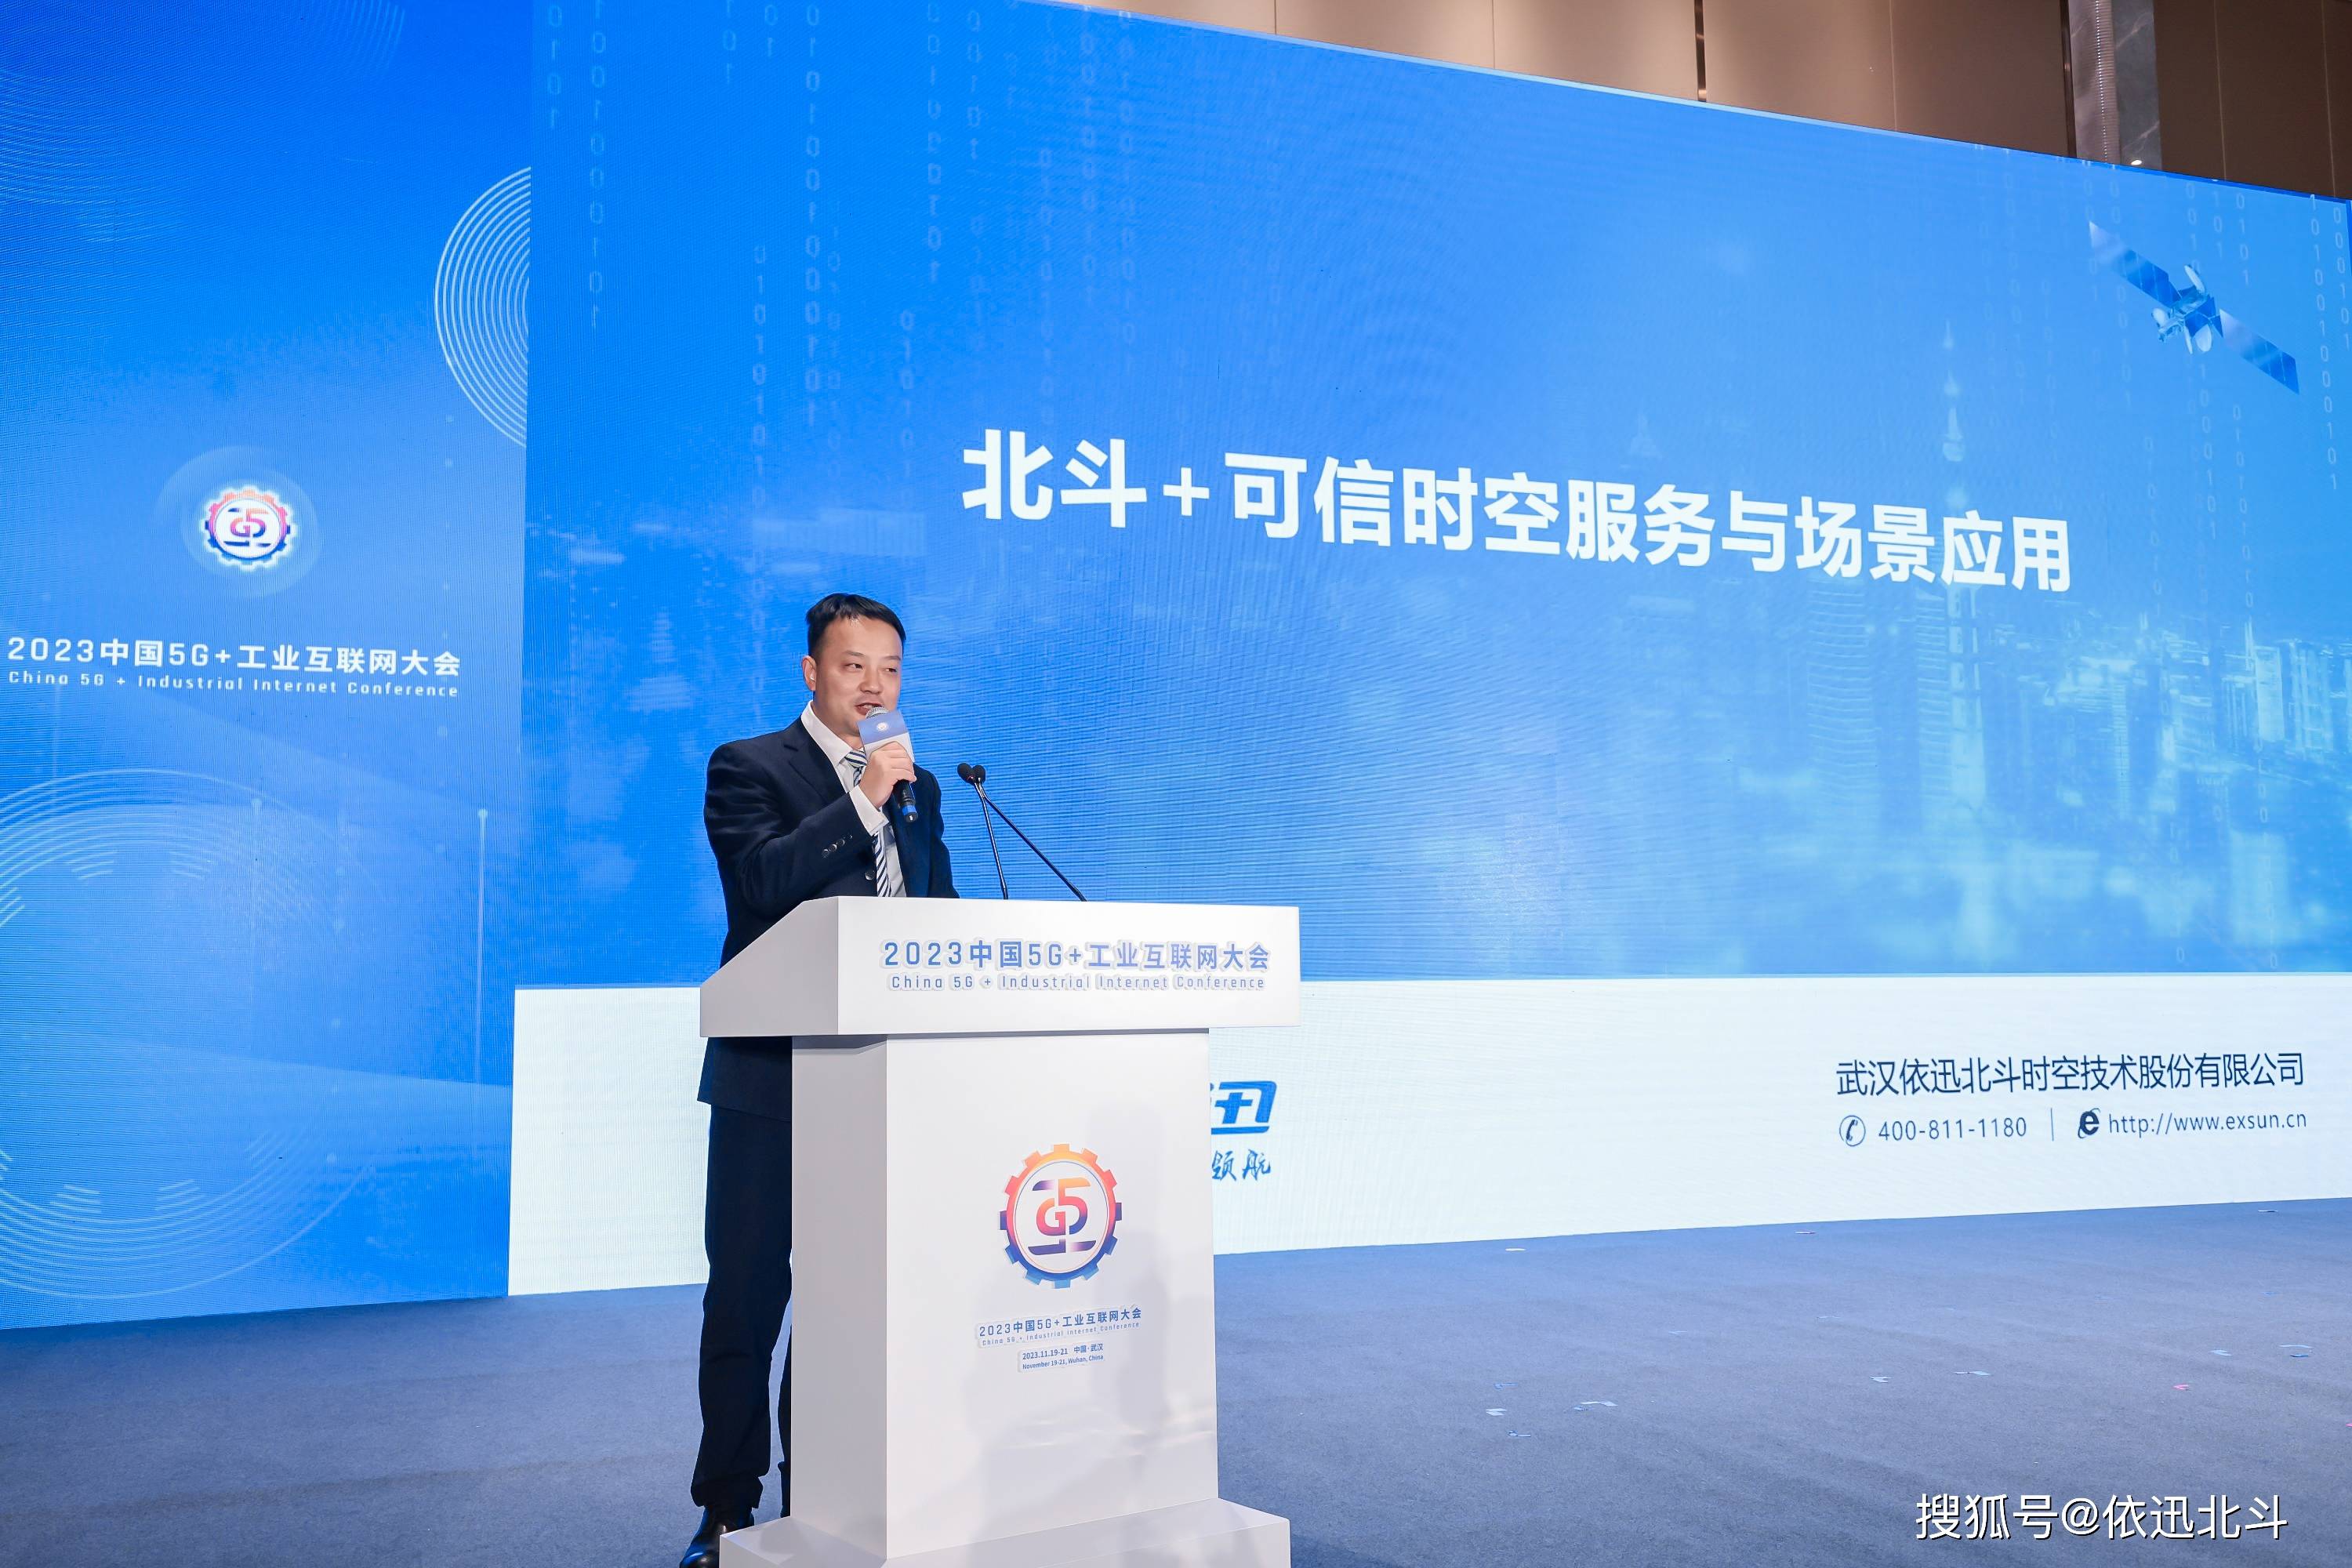 依迅北斗参展2023中国5g 工业互联网大会,祝贺湖北省北斗卫星技术应用